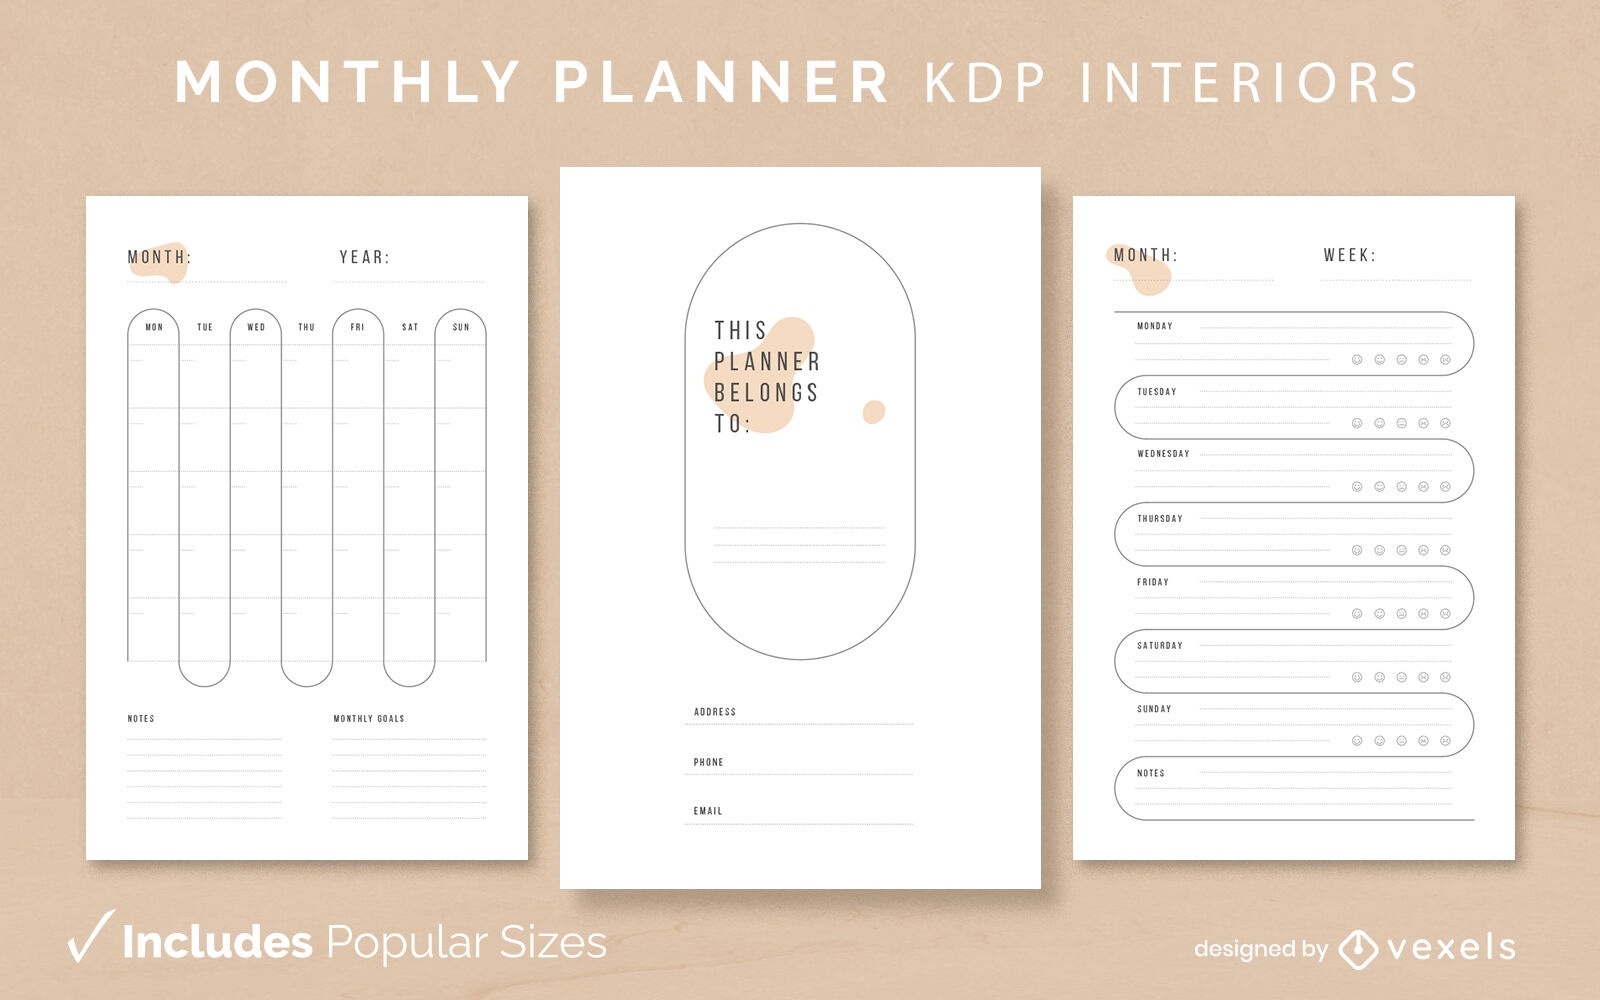 Plantilla minimalista de planificador mensual Dise?o de interiores KDP